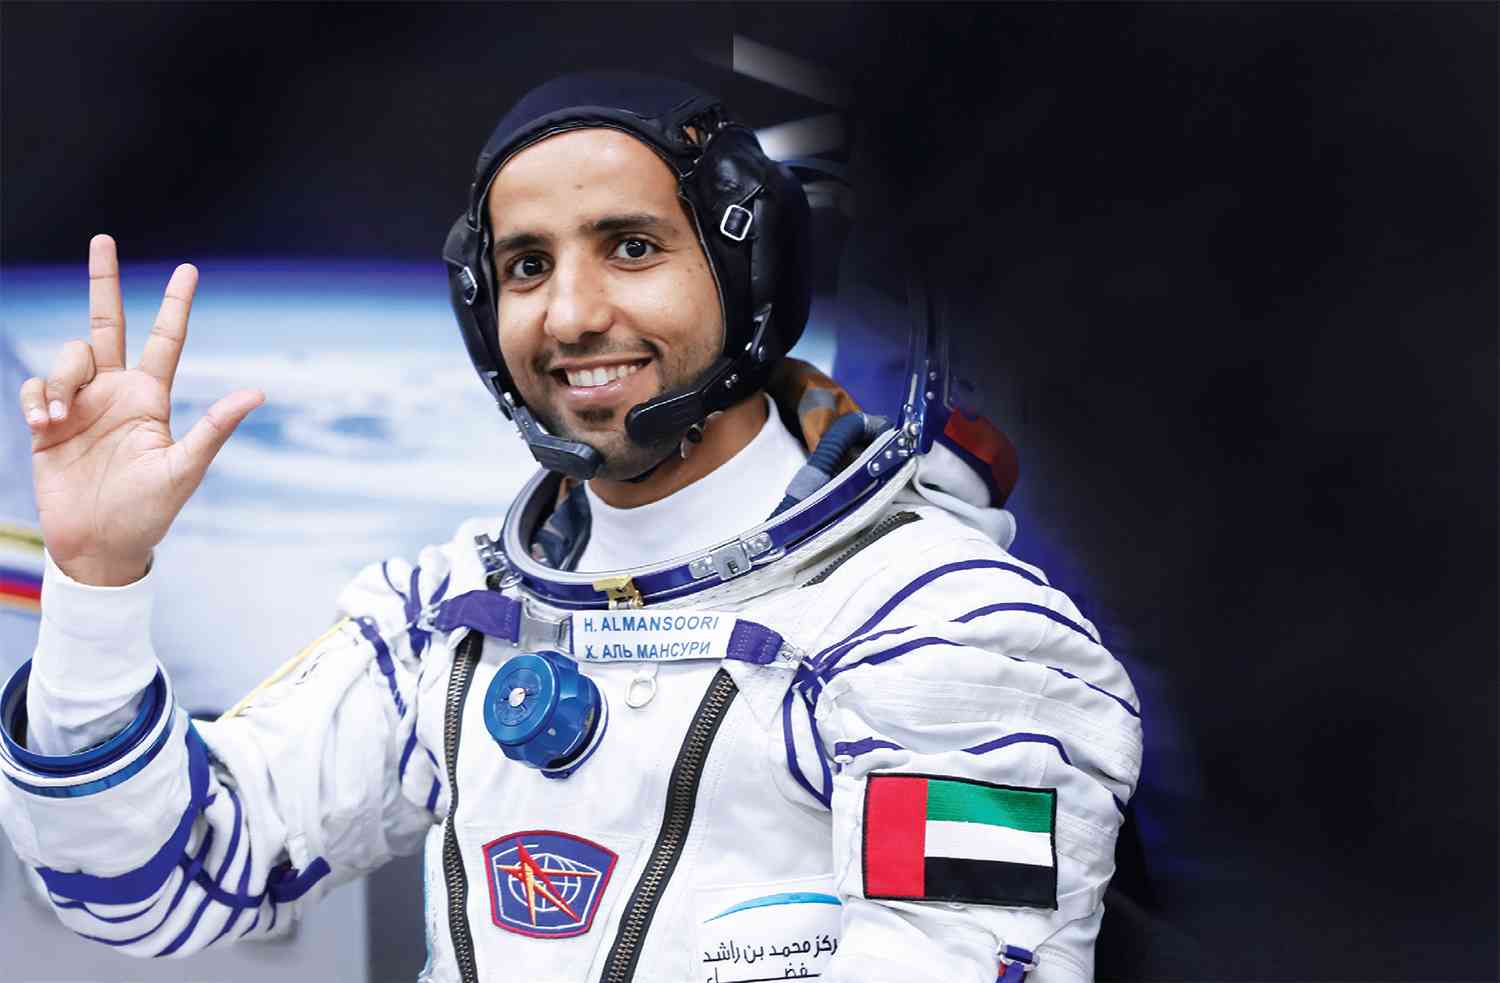 احتفال بمرور عام على انطلاق أول رائد فضاء إماراتي إلى المحطة الدولية عبر الإمارات أخبار وتقارير البيان